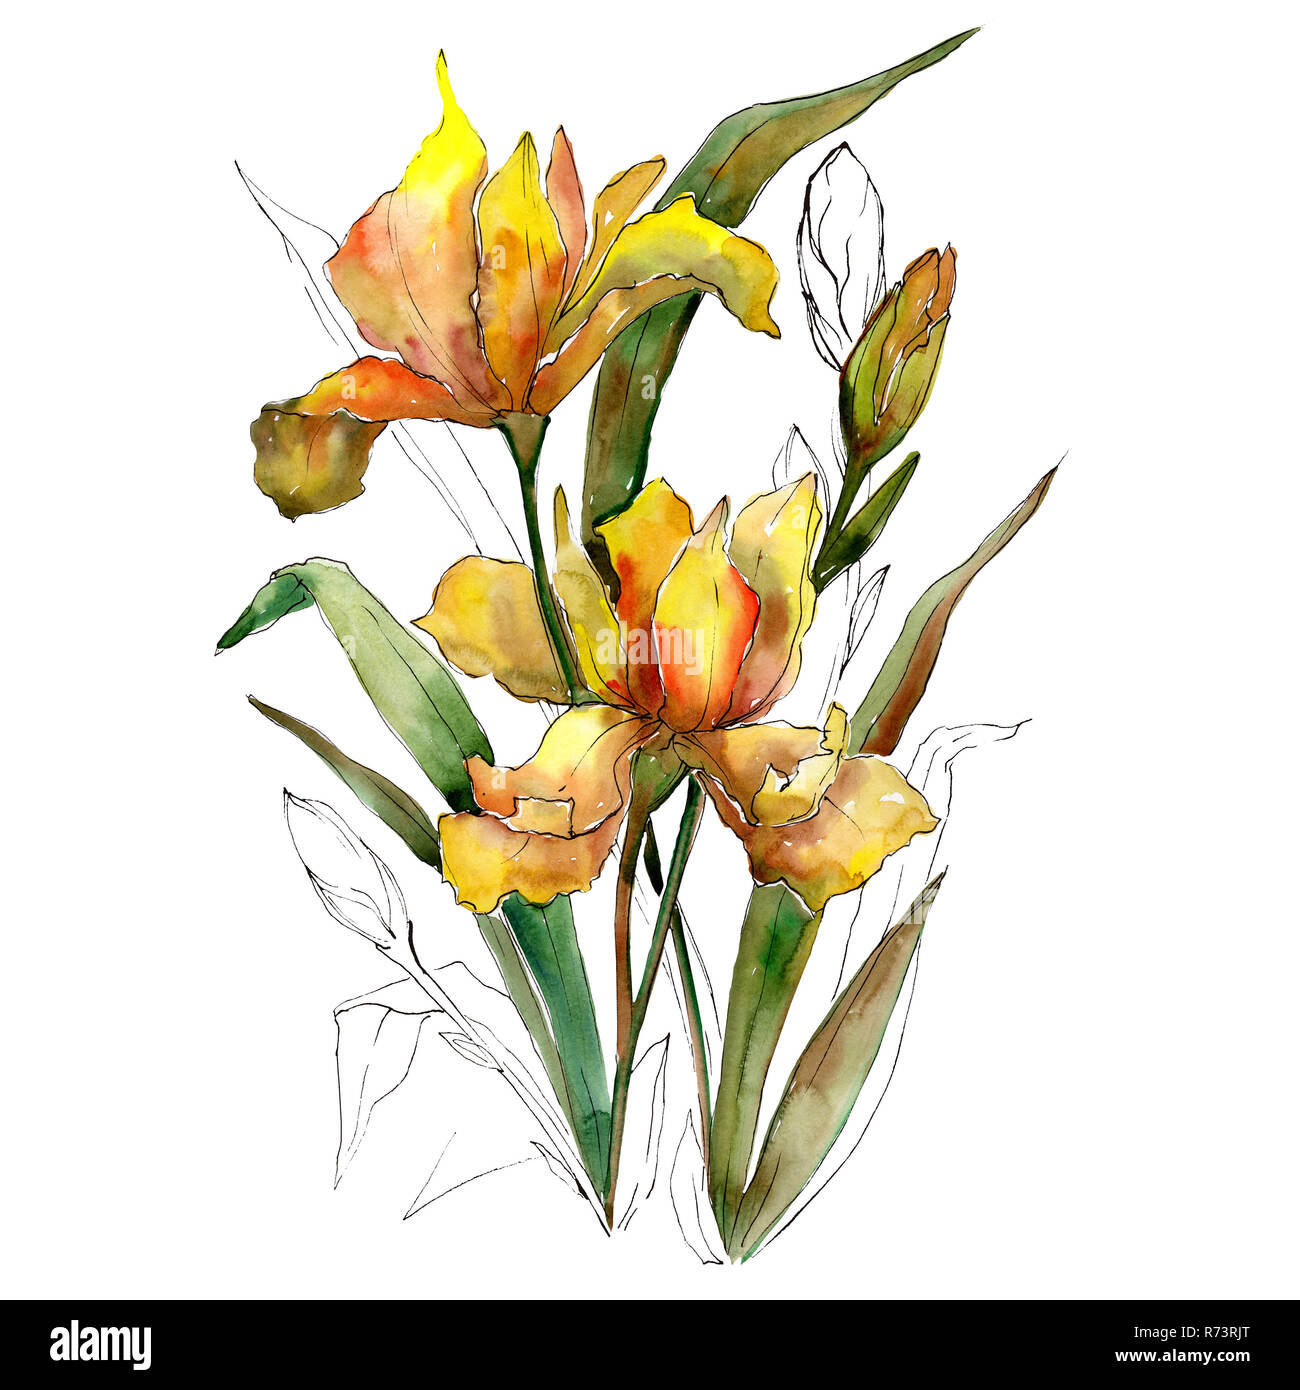 Gelbe Iris Blumen Blumenstrauß. Aquarell Hintergrund Abbildung. Aquarell isoliert Blumenstrauß Element. Stockfoto